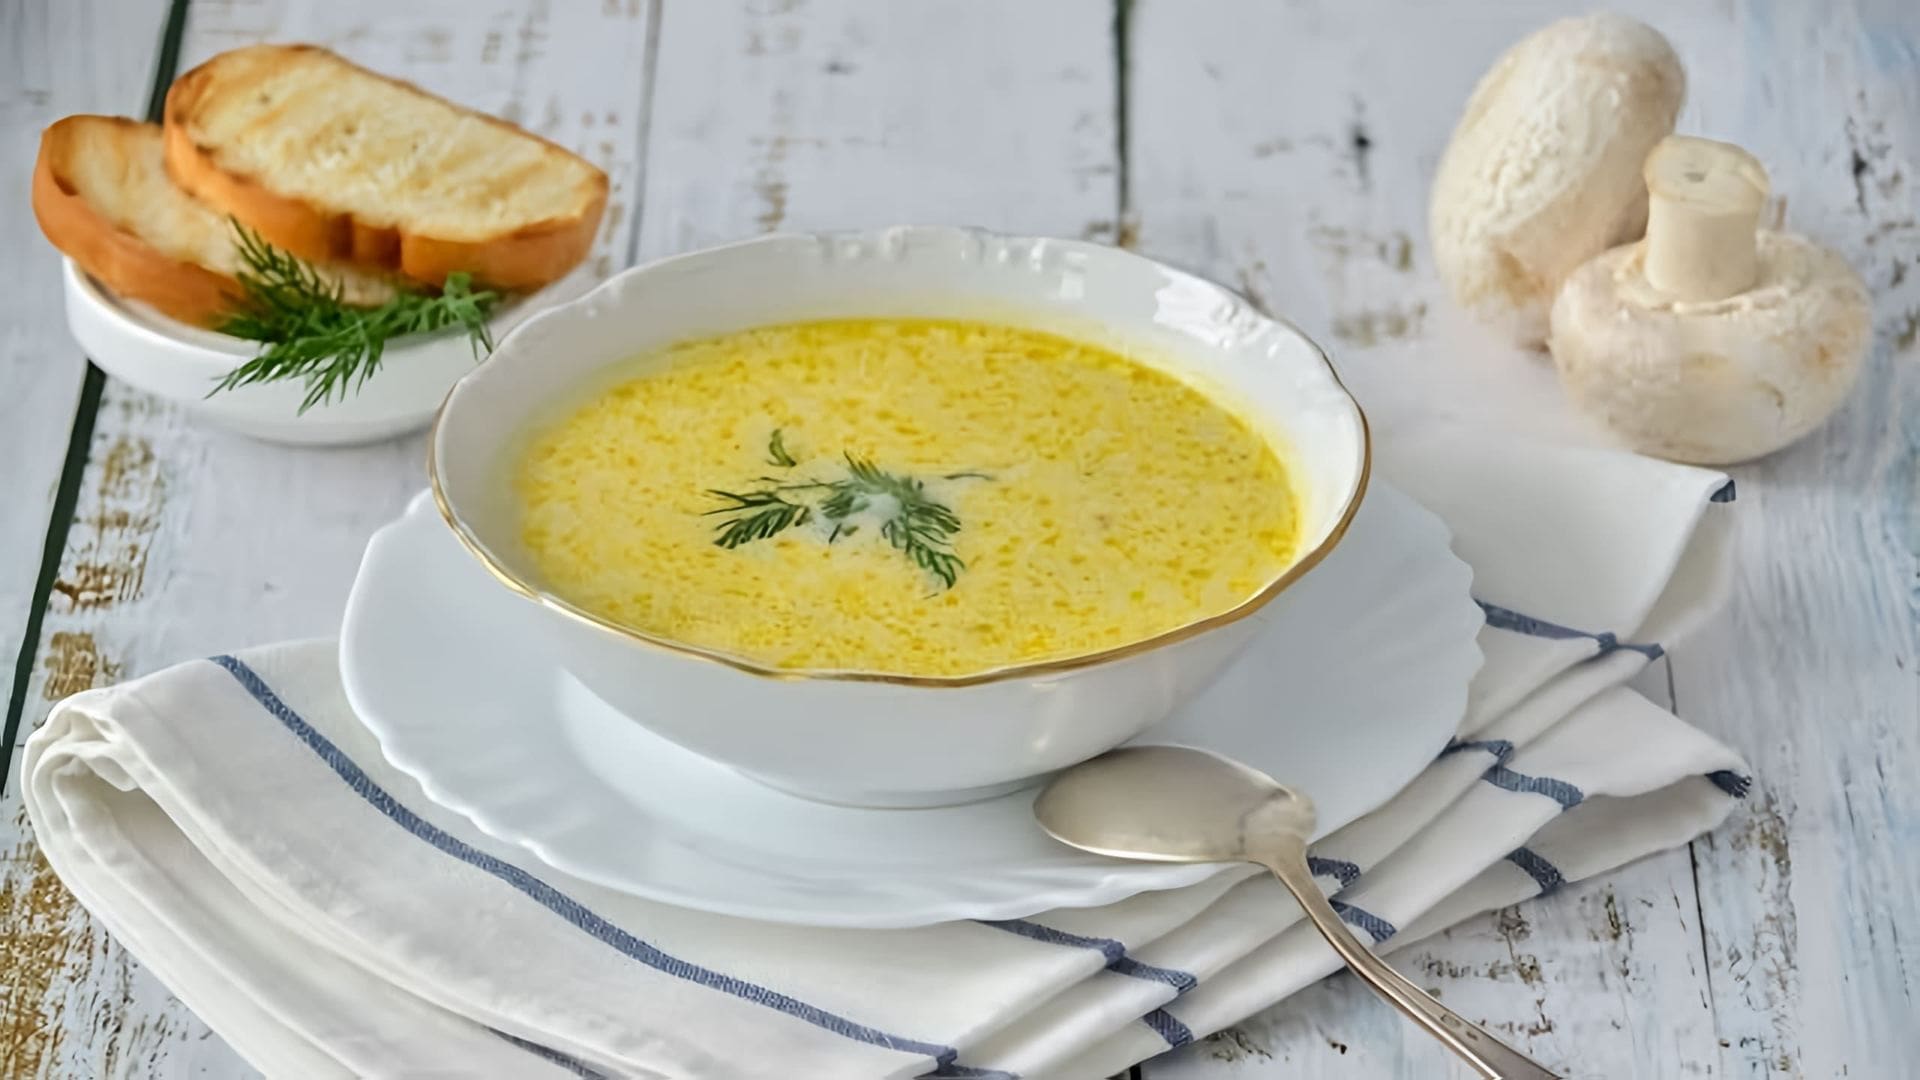 "Лучше всех!" - это видео-ролик, который демонстрирует приготовление вкусного и сытного сырного супа с курицей и грибами